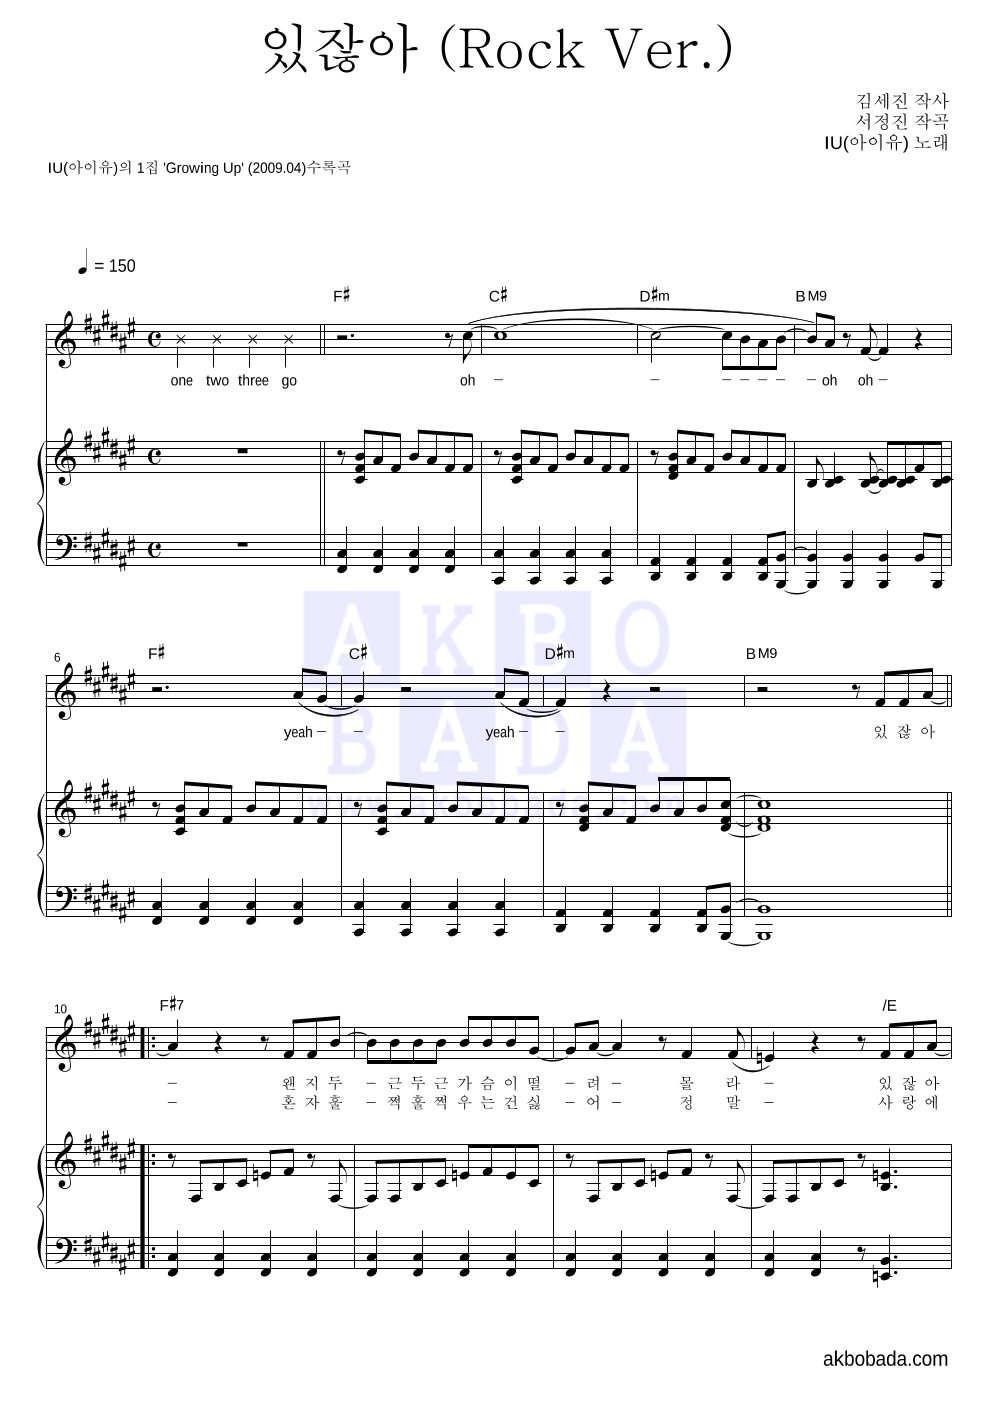 아이유 - 있잖아 (Rock Ver.) 피아노 3단 악보 